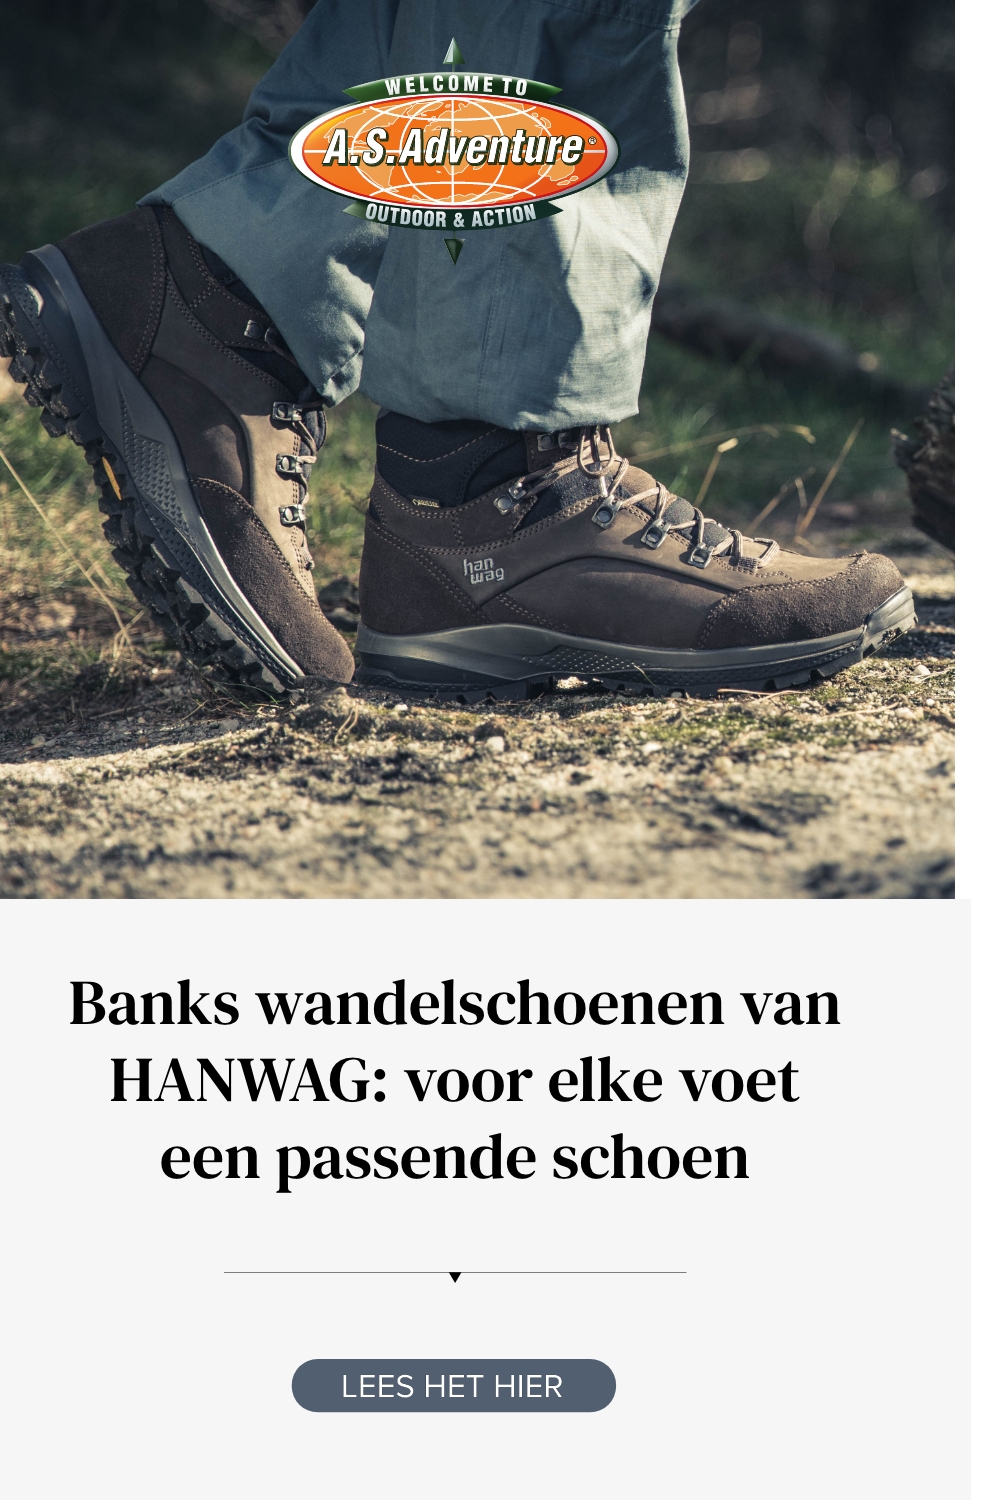 Banks wandelschoenen van HANWAG: voor elke voet passende schoen | A.S.Adventure